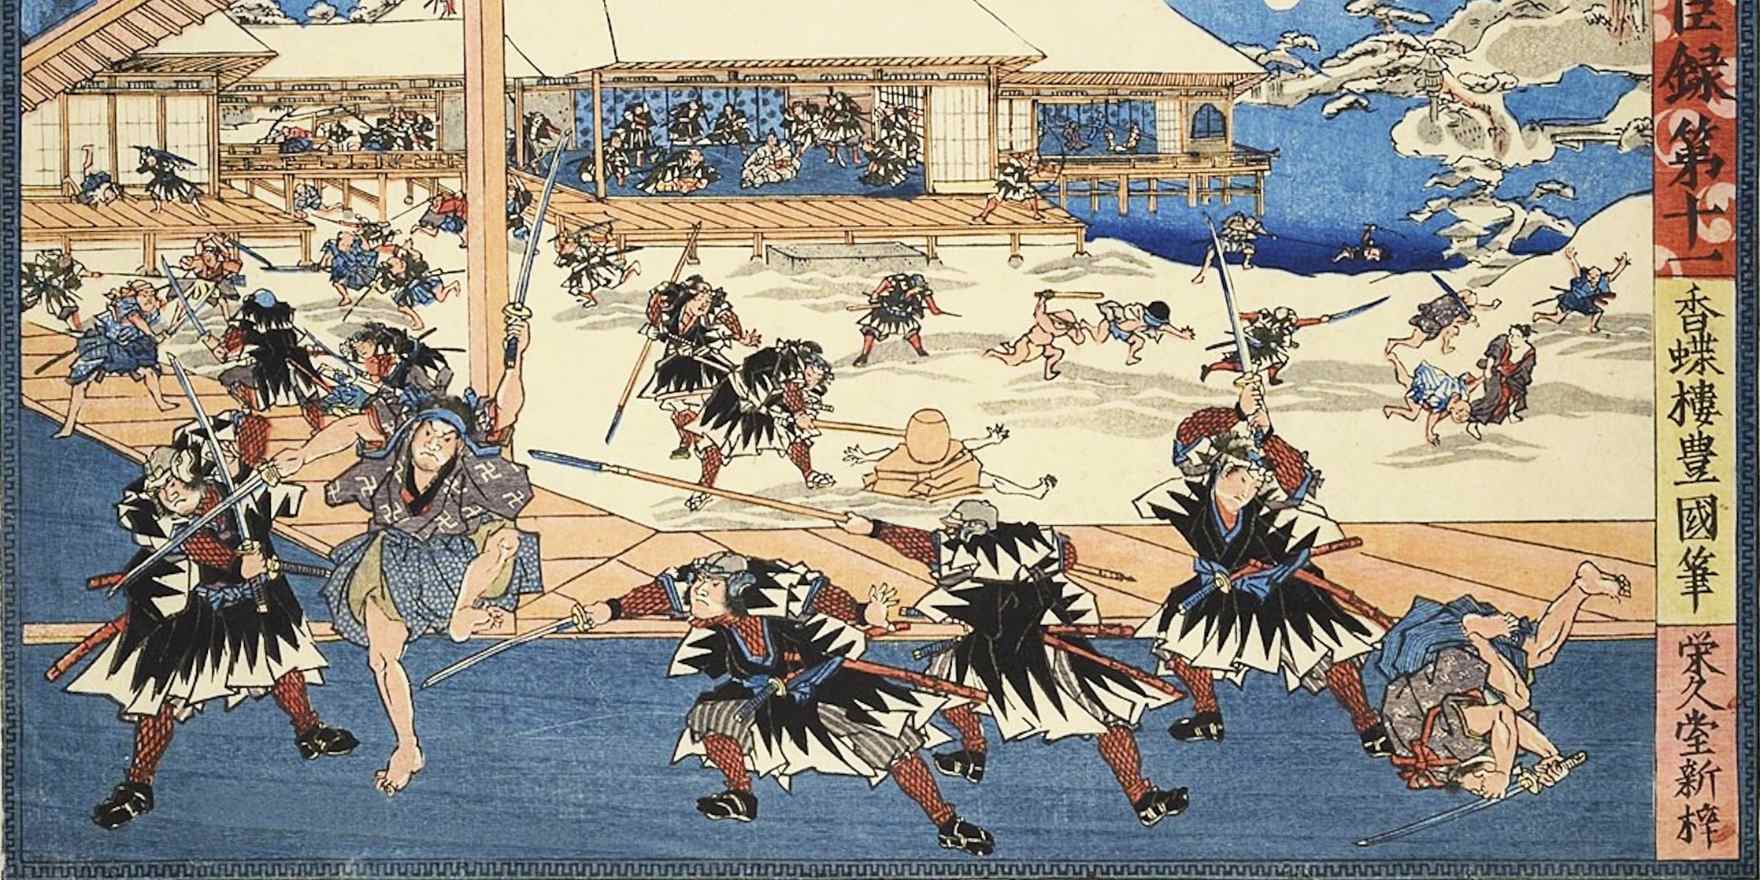 muramachi period